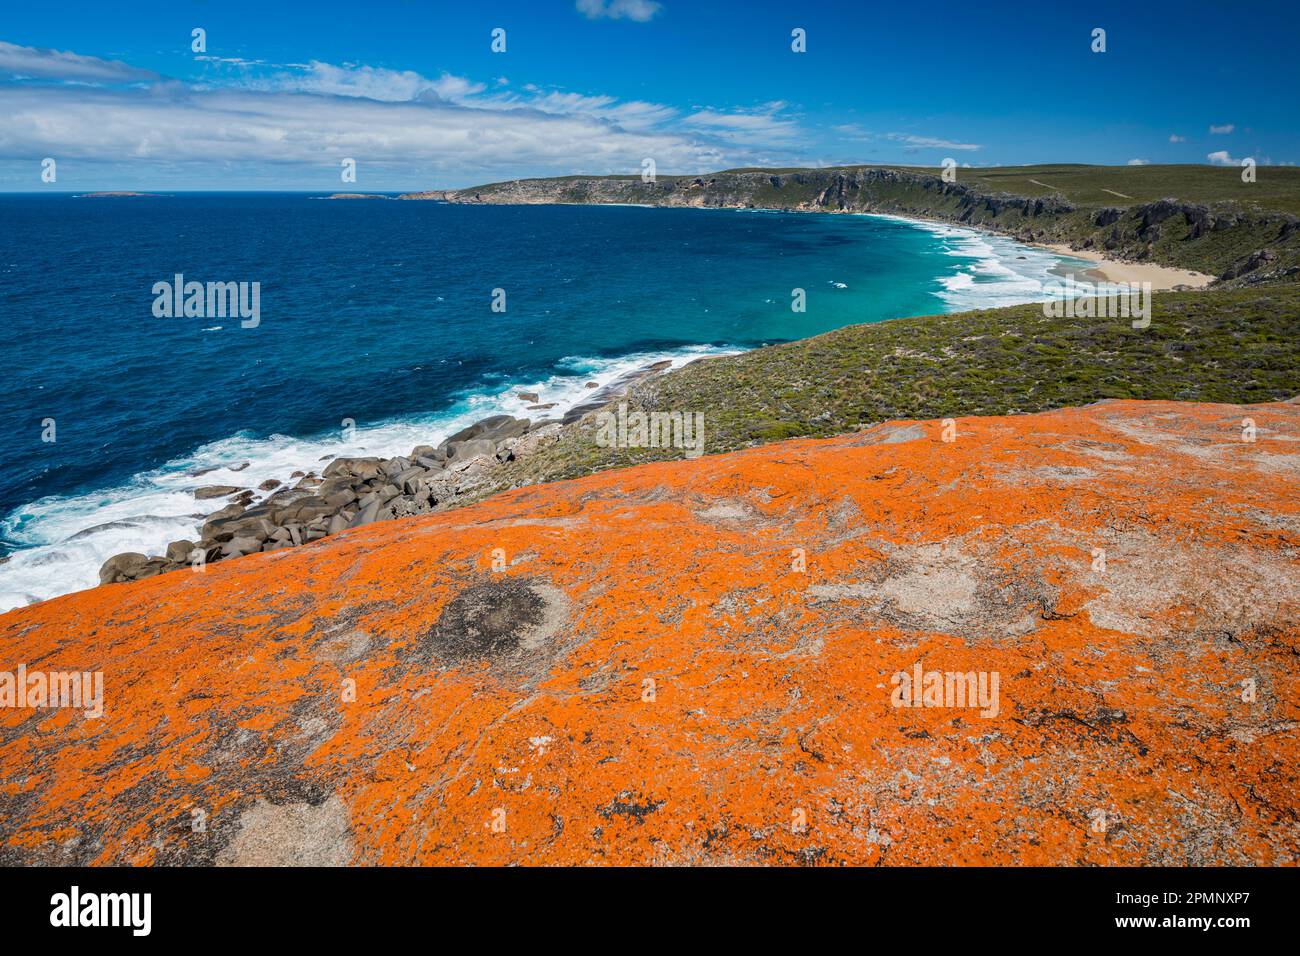 Rochers dans le parc national de Flinders Chase, une aire protégée située à l'extrémité ouest de l'île Kangaroo Island en Australie ; Adélaïde, Australie méridionale, Australie Banque D'Images